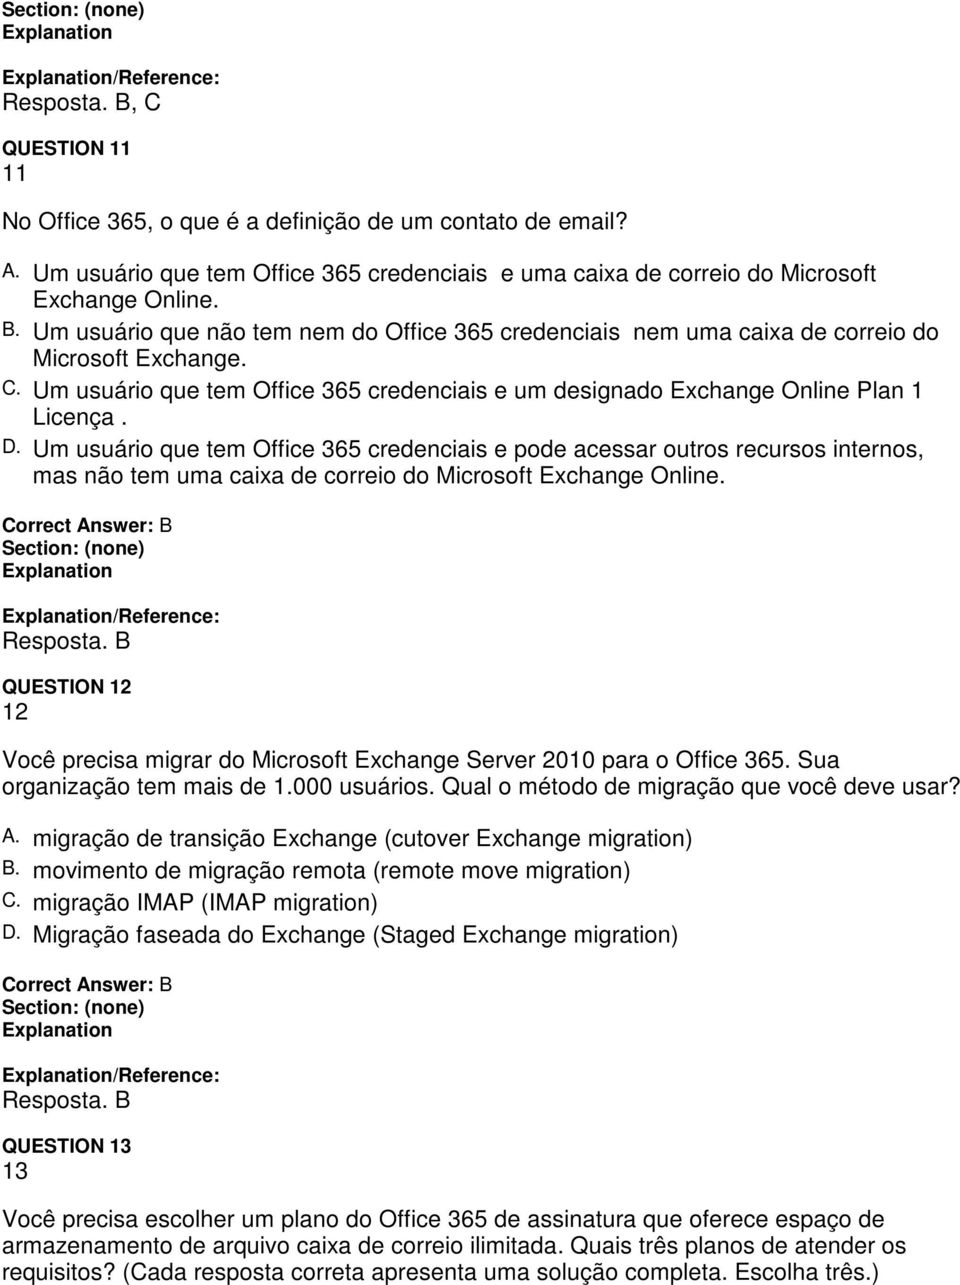 Um usuário que tem Office 365 credenciais e pode acessar outros recursos internos, mas não tem uma caixa de correio do Microsoft Exchange Online. /Reference: Resposta.